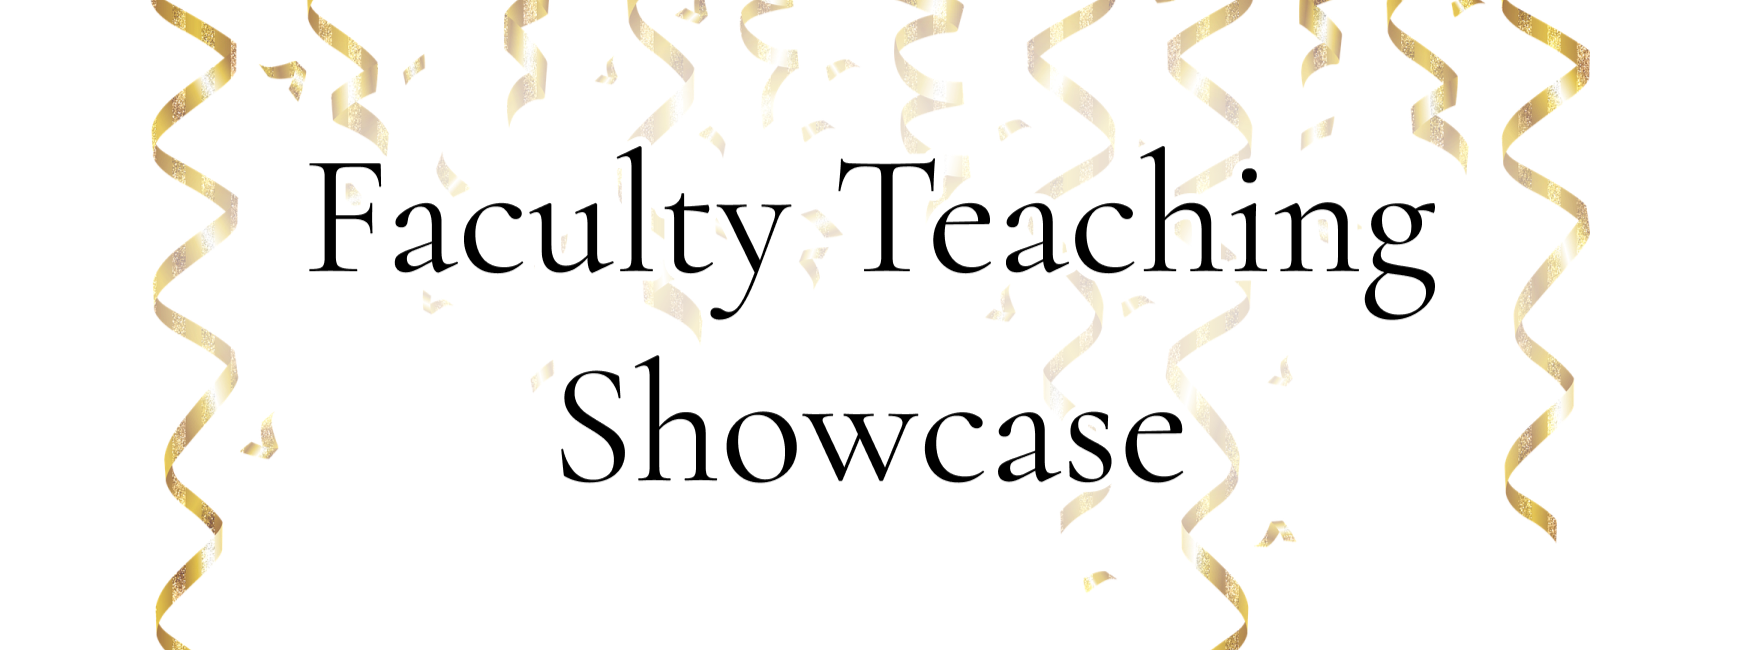 Faculty Teaching Showcase